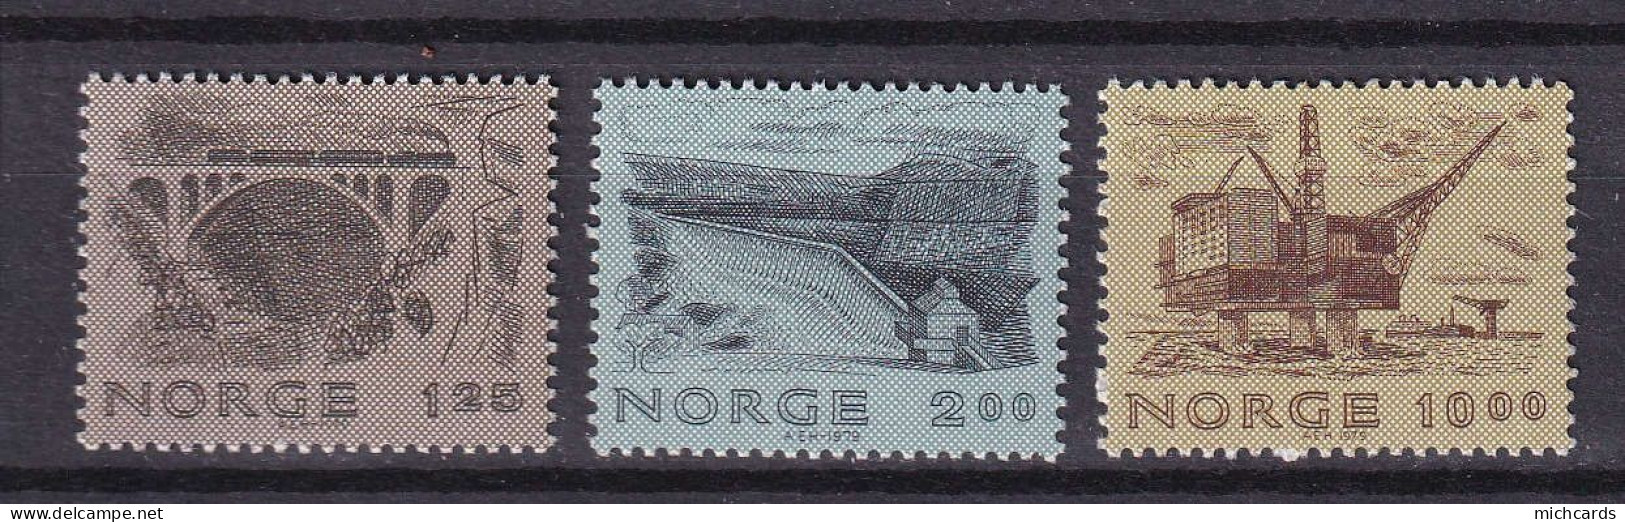 175 NORVEGE 1979 - Y&T 758/60 - Pont Barrage Petrole - Neuf ** (MNH) Sans Charniere - Neufs